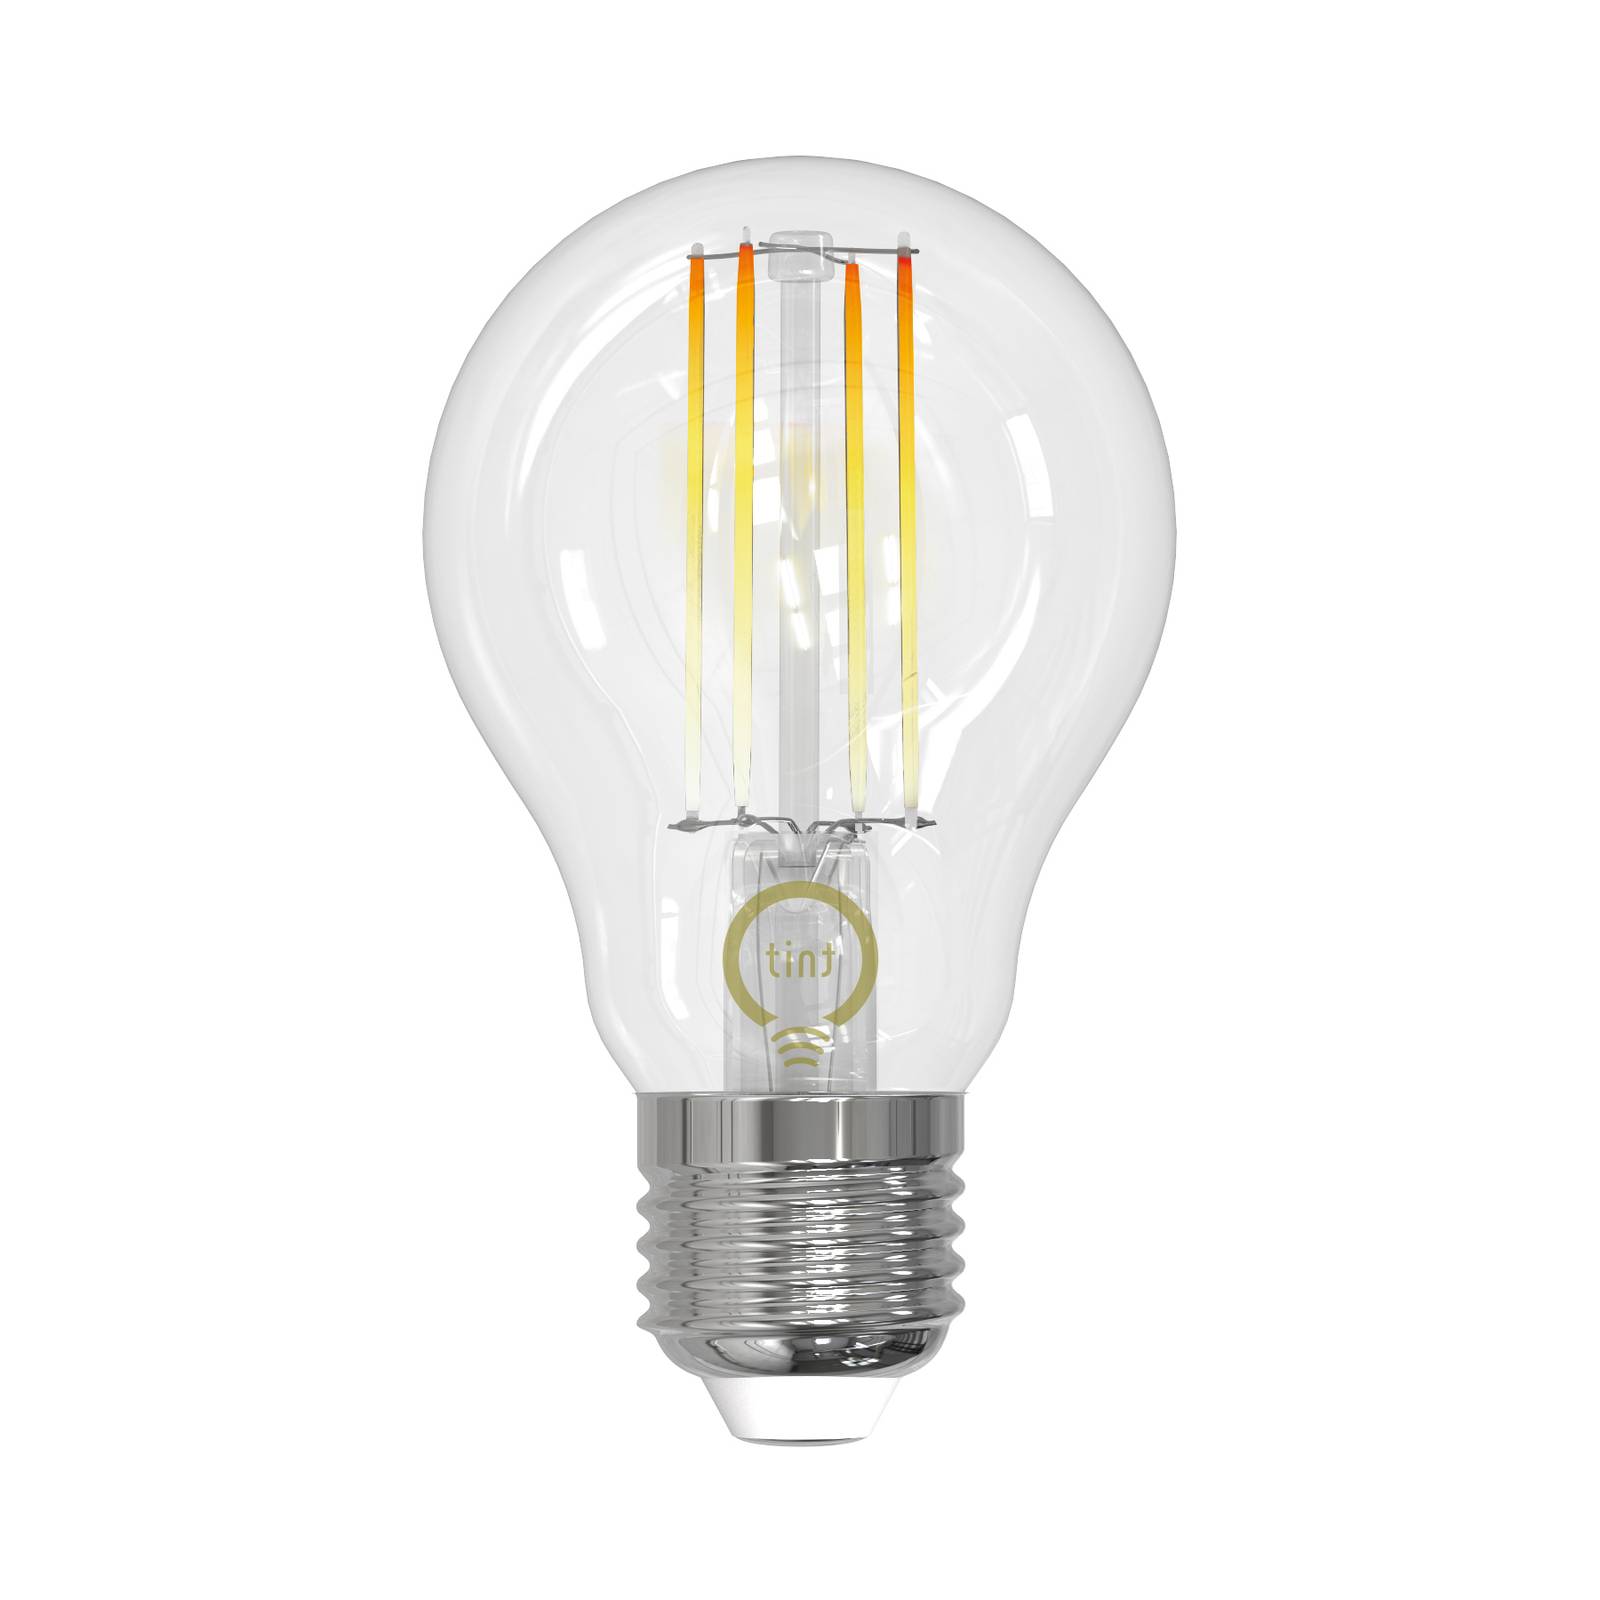 Müller Licht tint LED-filamentlampa E27 7 W CCT